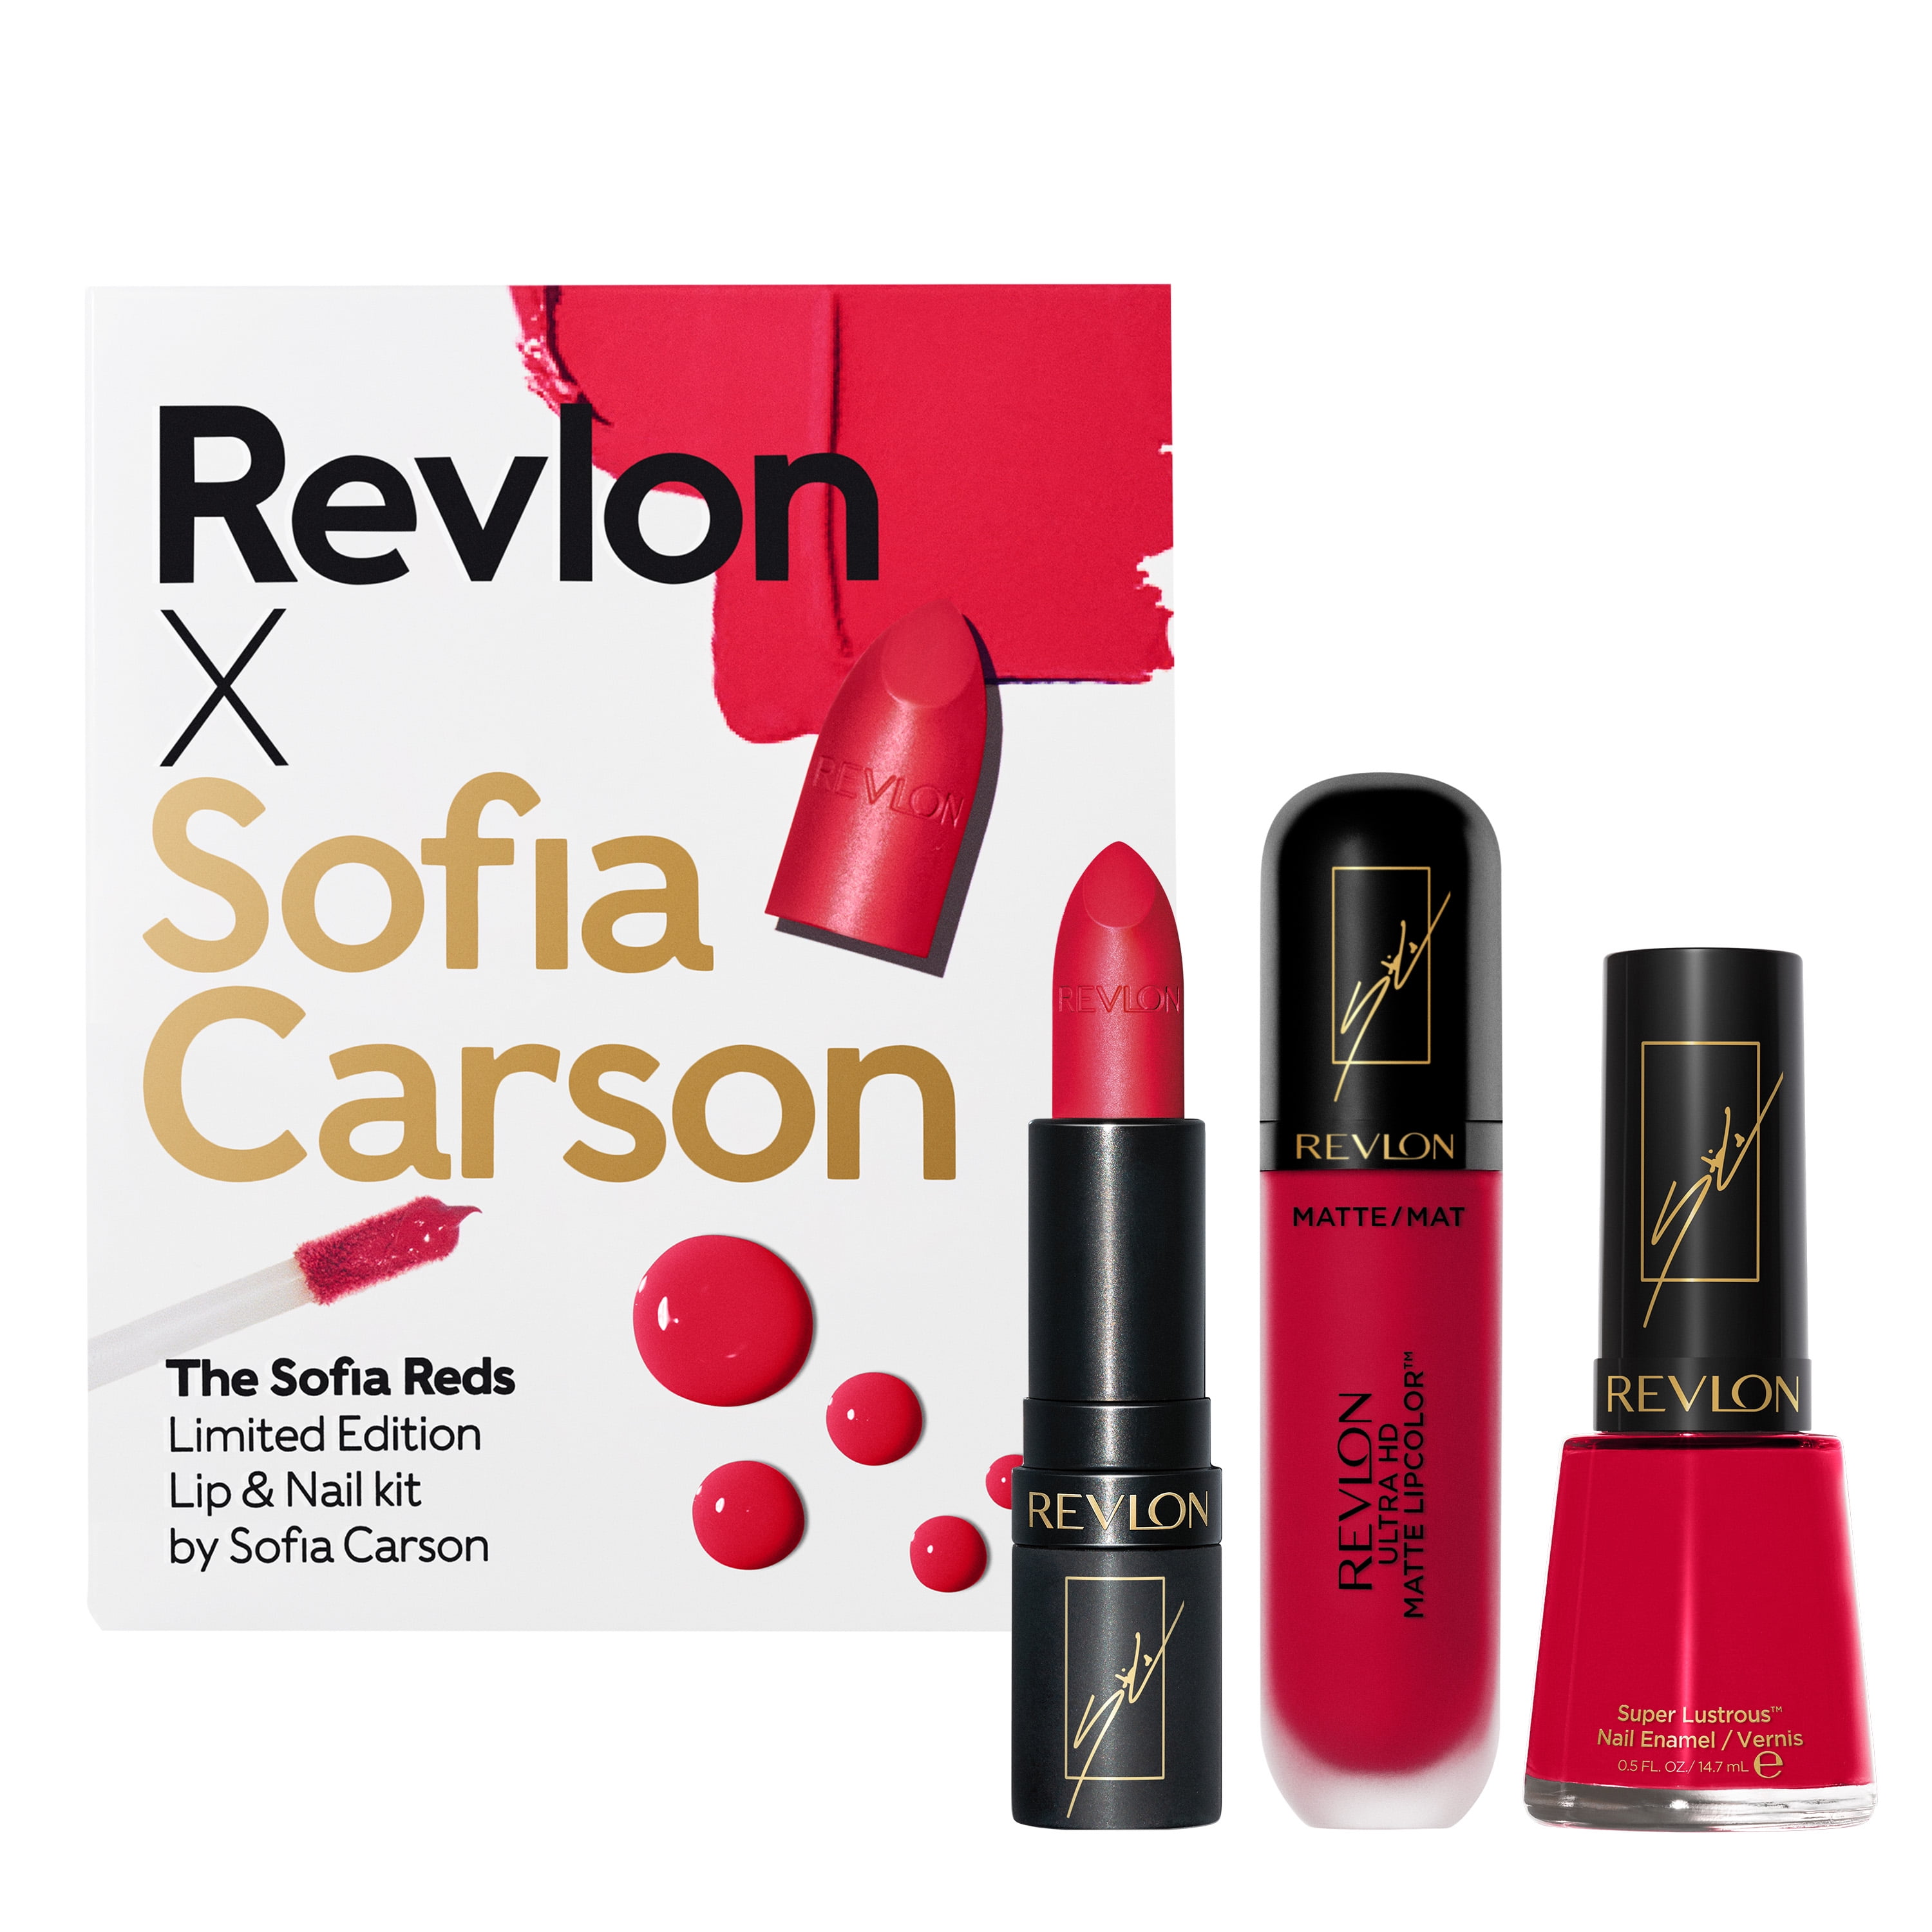 Revlon x Sofia Carson The Sofia Reds Makeup Kit Lipstick Lipcolor Nail Polish 0c5e4b30 5879 41dc b821 2d88c51774e6 1.38fe430e9b9c0131d1e02a5bb2e3c8f5